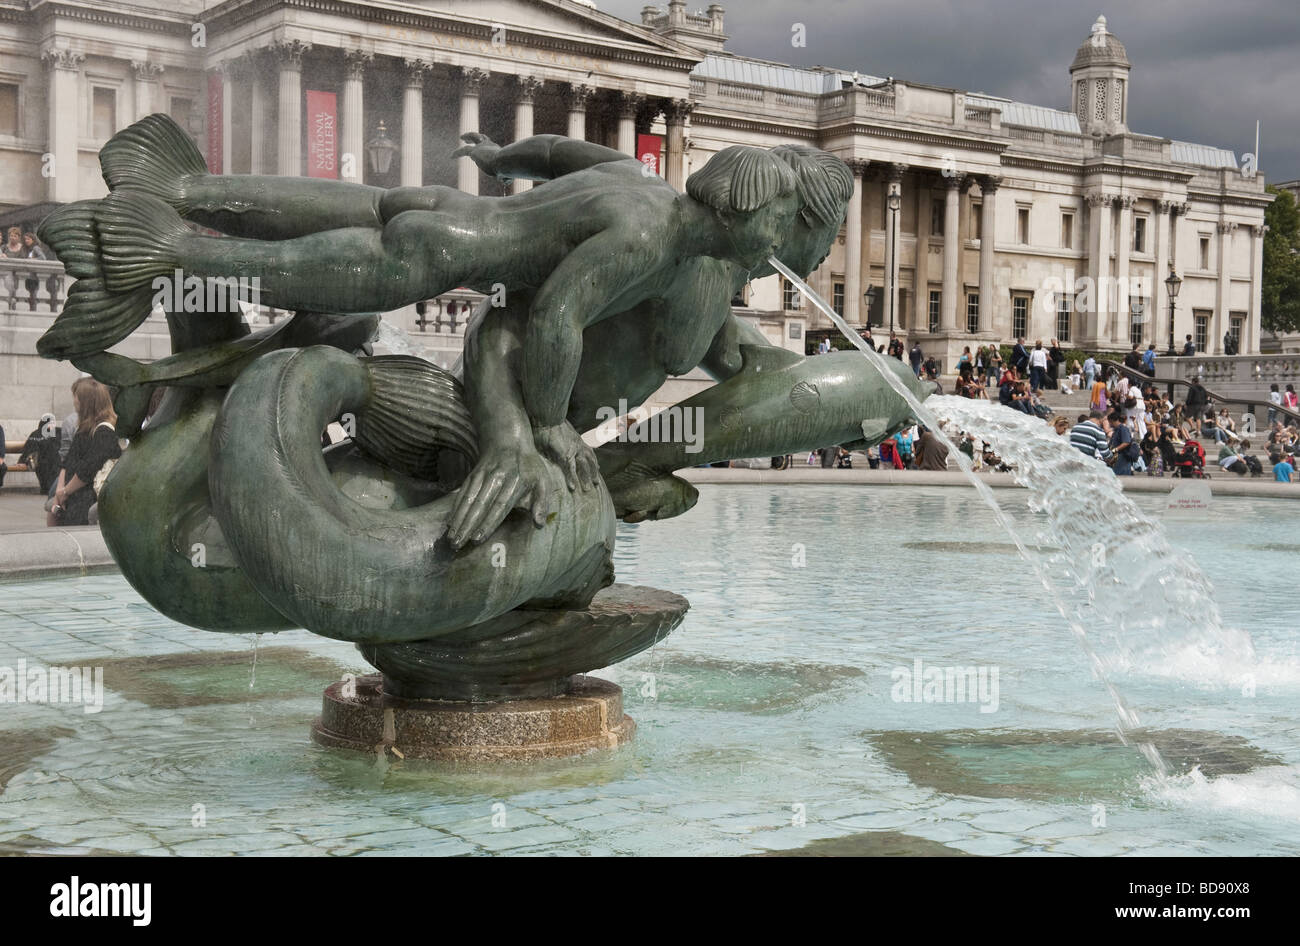 Des foules de touristes la sirène sculpture-fontaine à Trafalgar Square en face de la Galerie nationale, Londres Banque D'Images